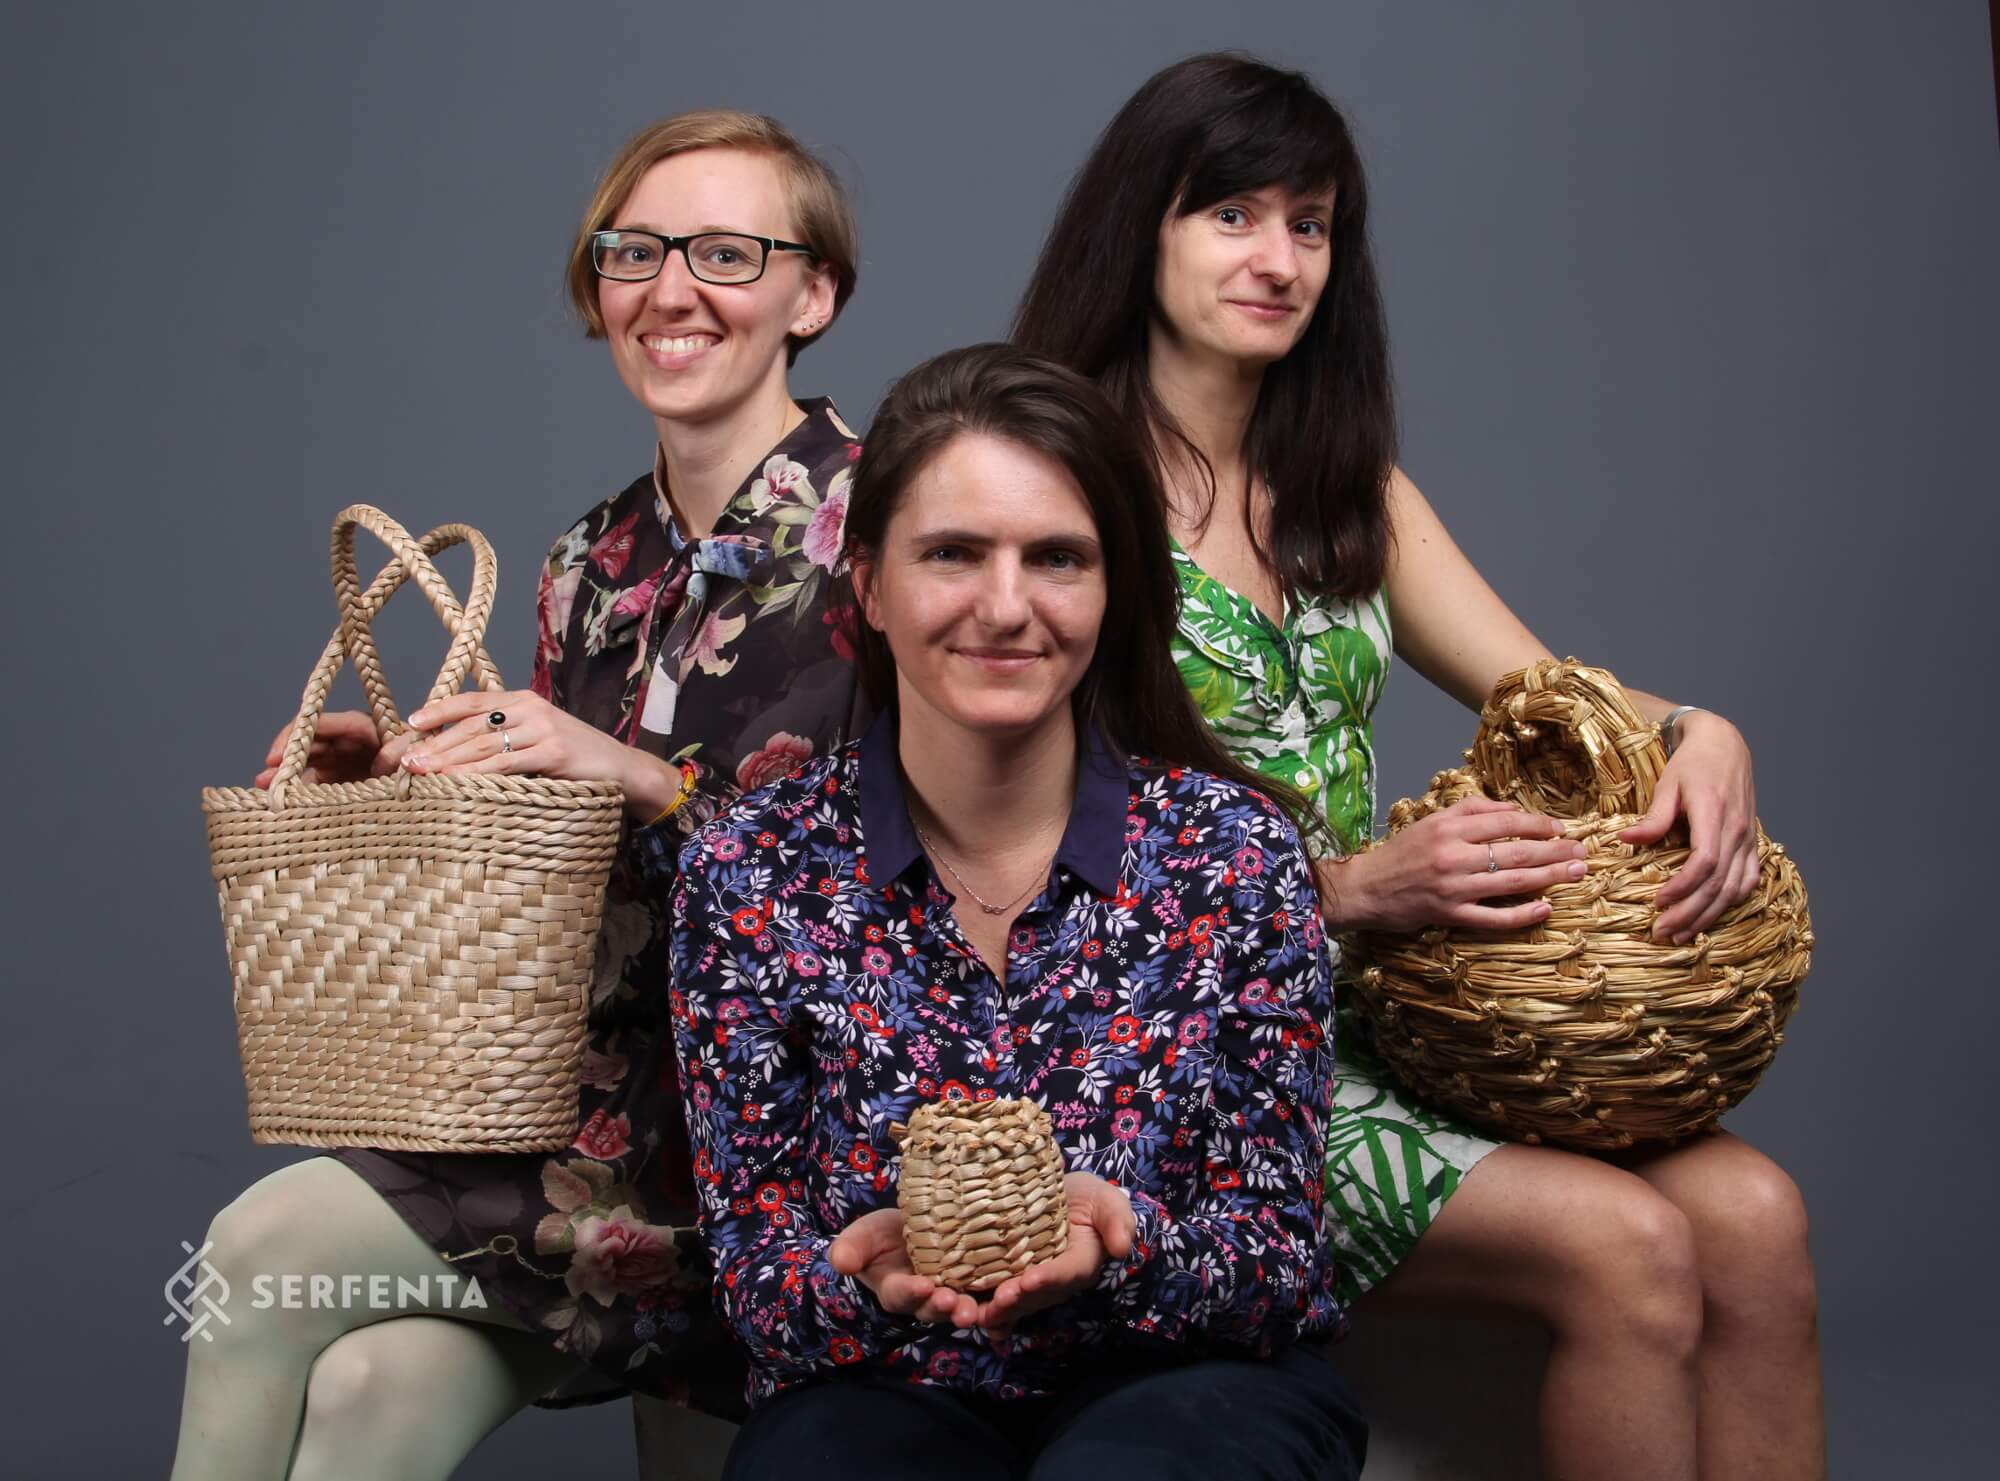 Serfenta team - women, craft, basketry, business, shop online